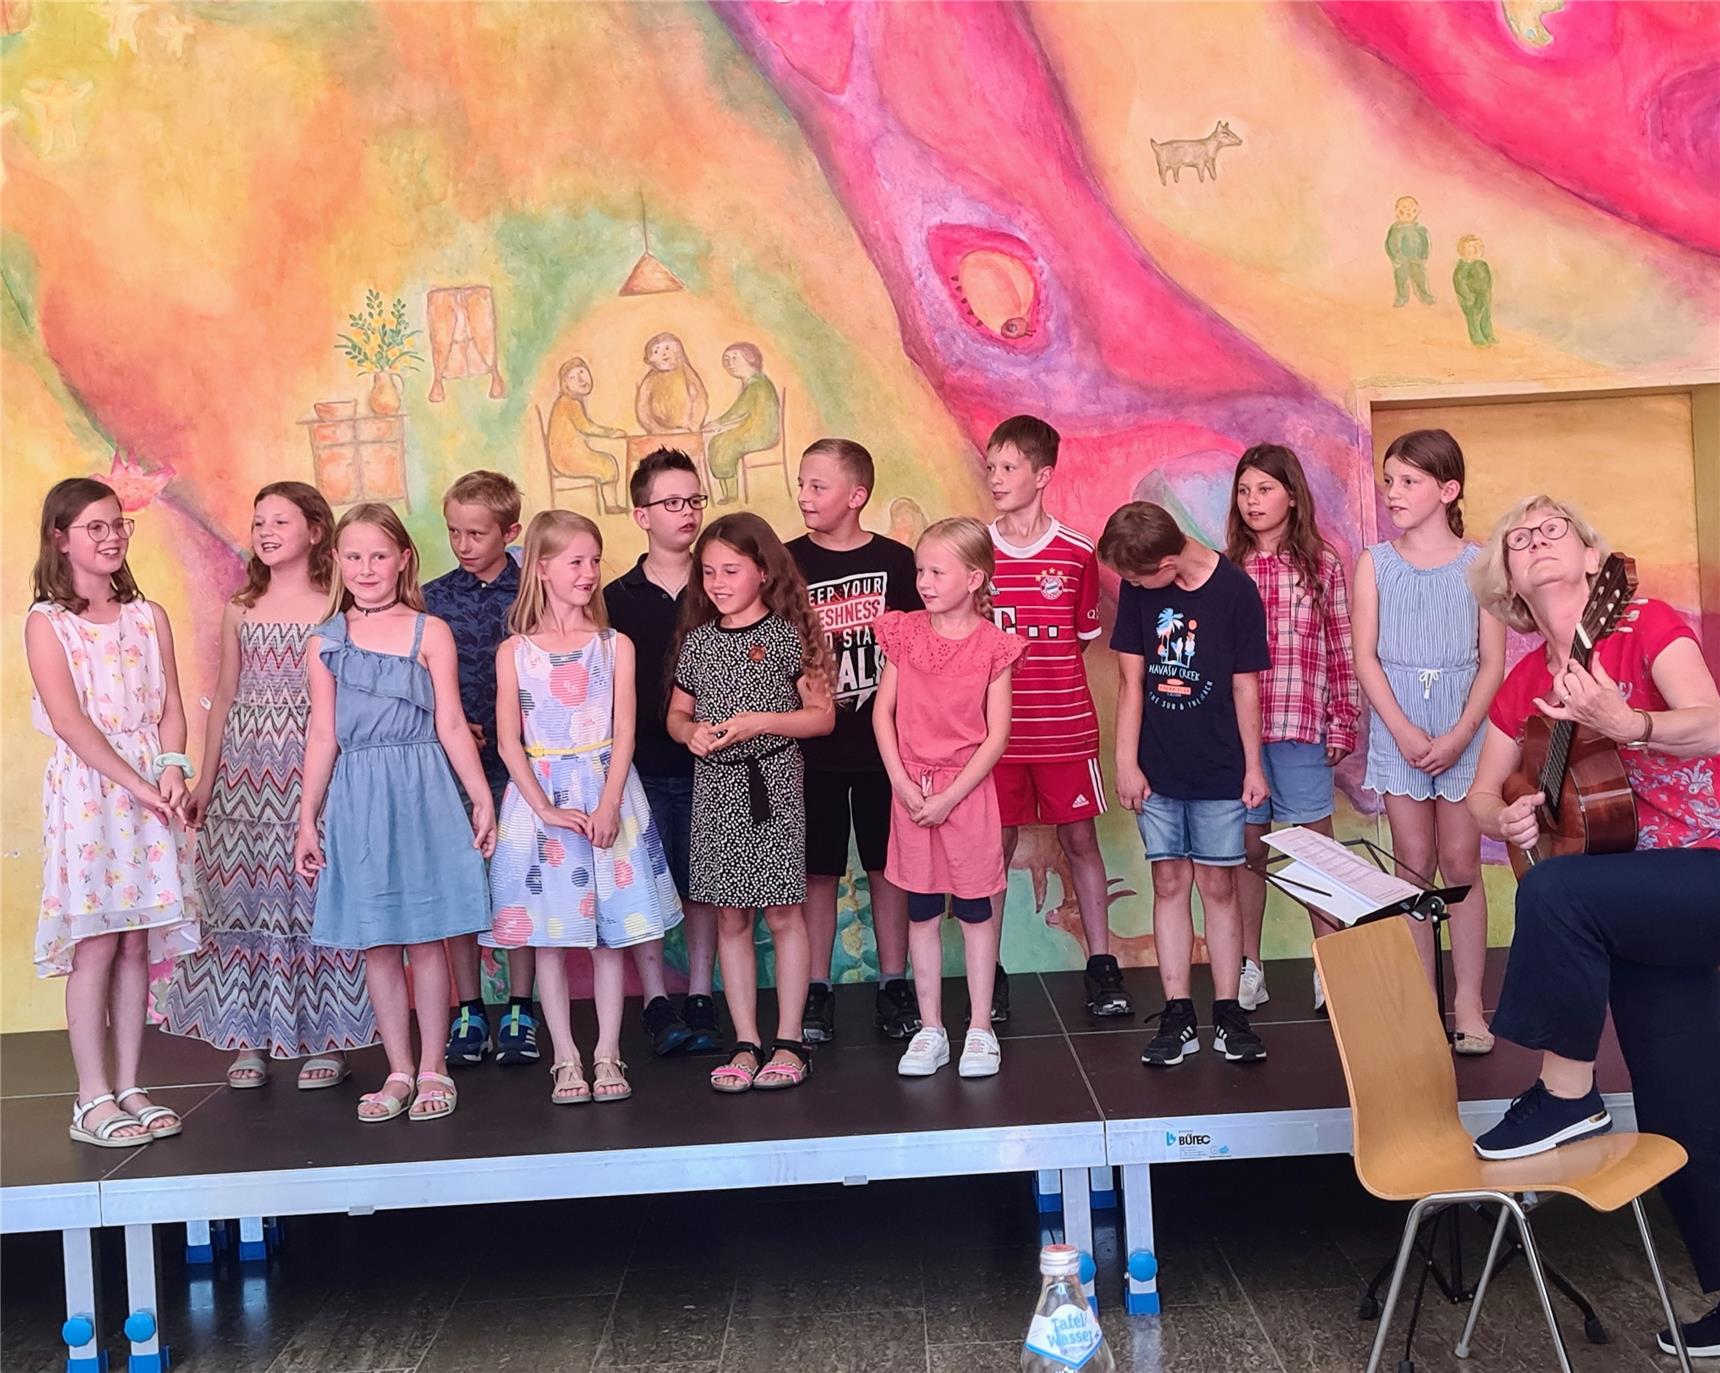 Der Kinderchor von der Partnerschule "Am Haidel": Man sieht´s, dass es den jungen Sängern große Freude gemacht hat am Unterhaltungsprogramm mitzuwirken. Foto: (c) Grimsmann | Caritas FRG.